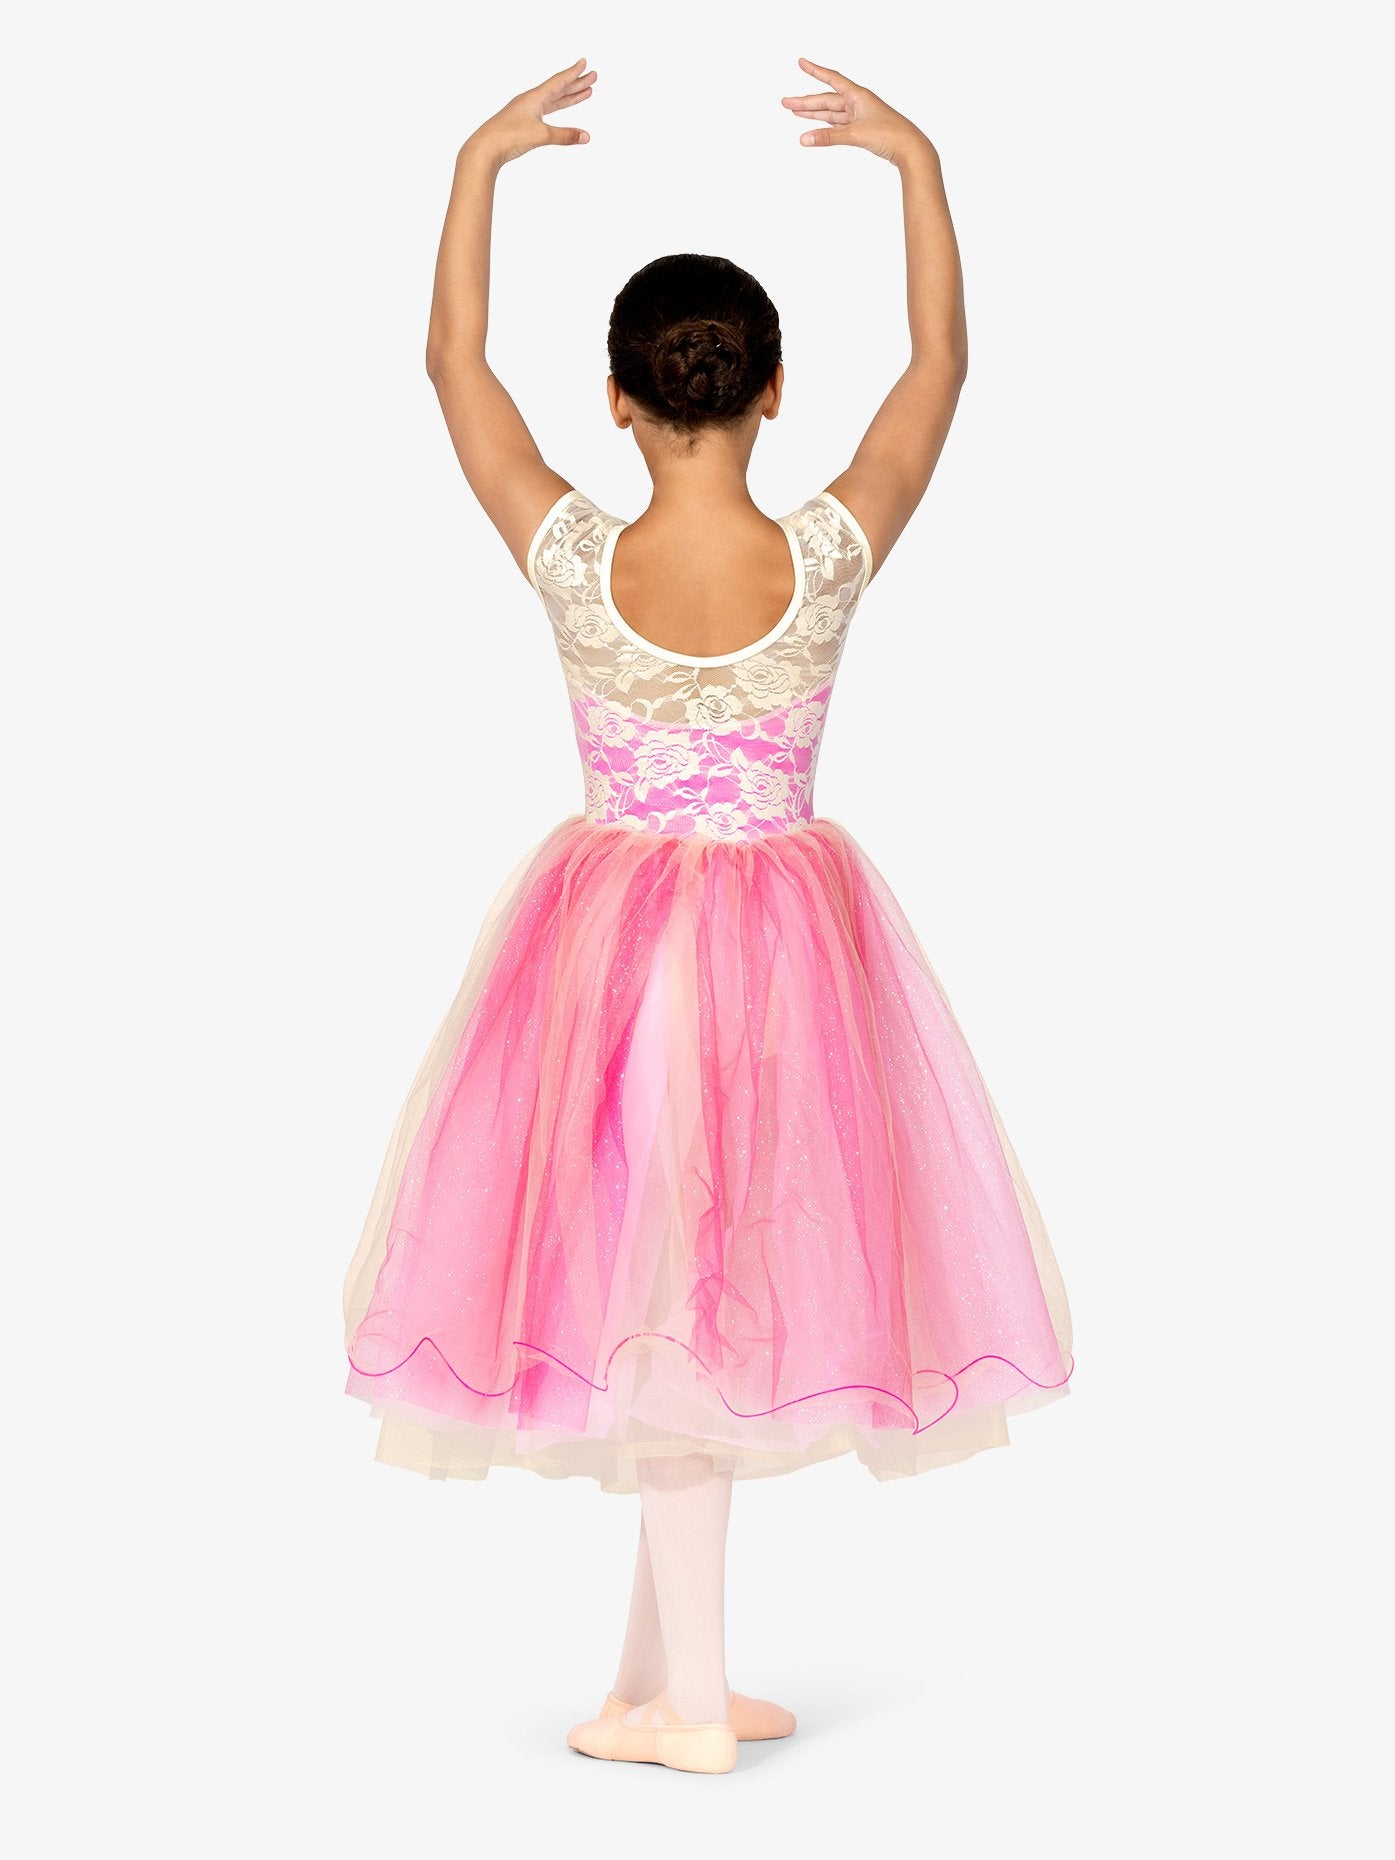 エリッセ キャップスリーブレースパフォーマンスバレエドレス【子供】Elisse Girls Cap Sleeve Lace Performance Ballet Dress